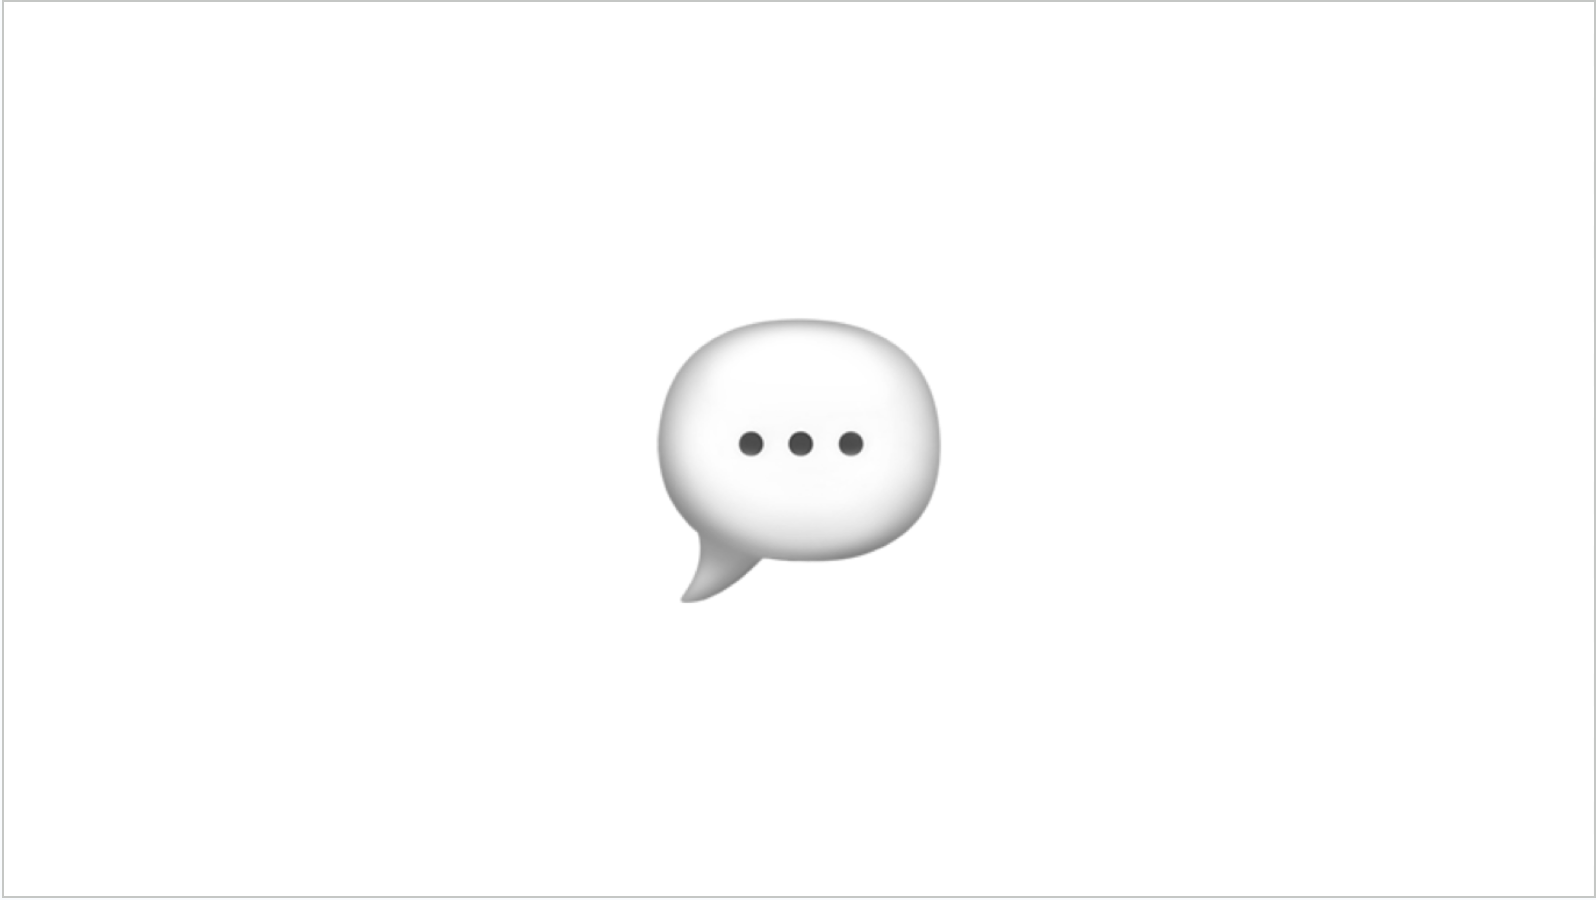 A speech bubble emoji